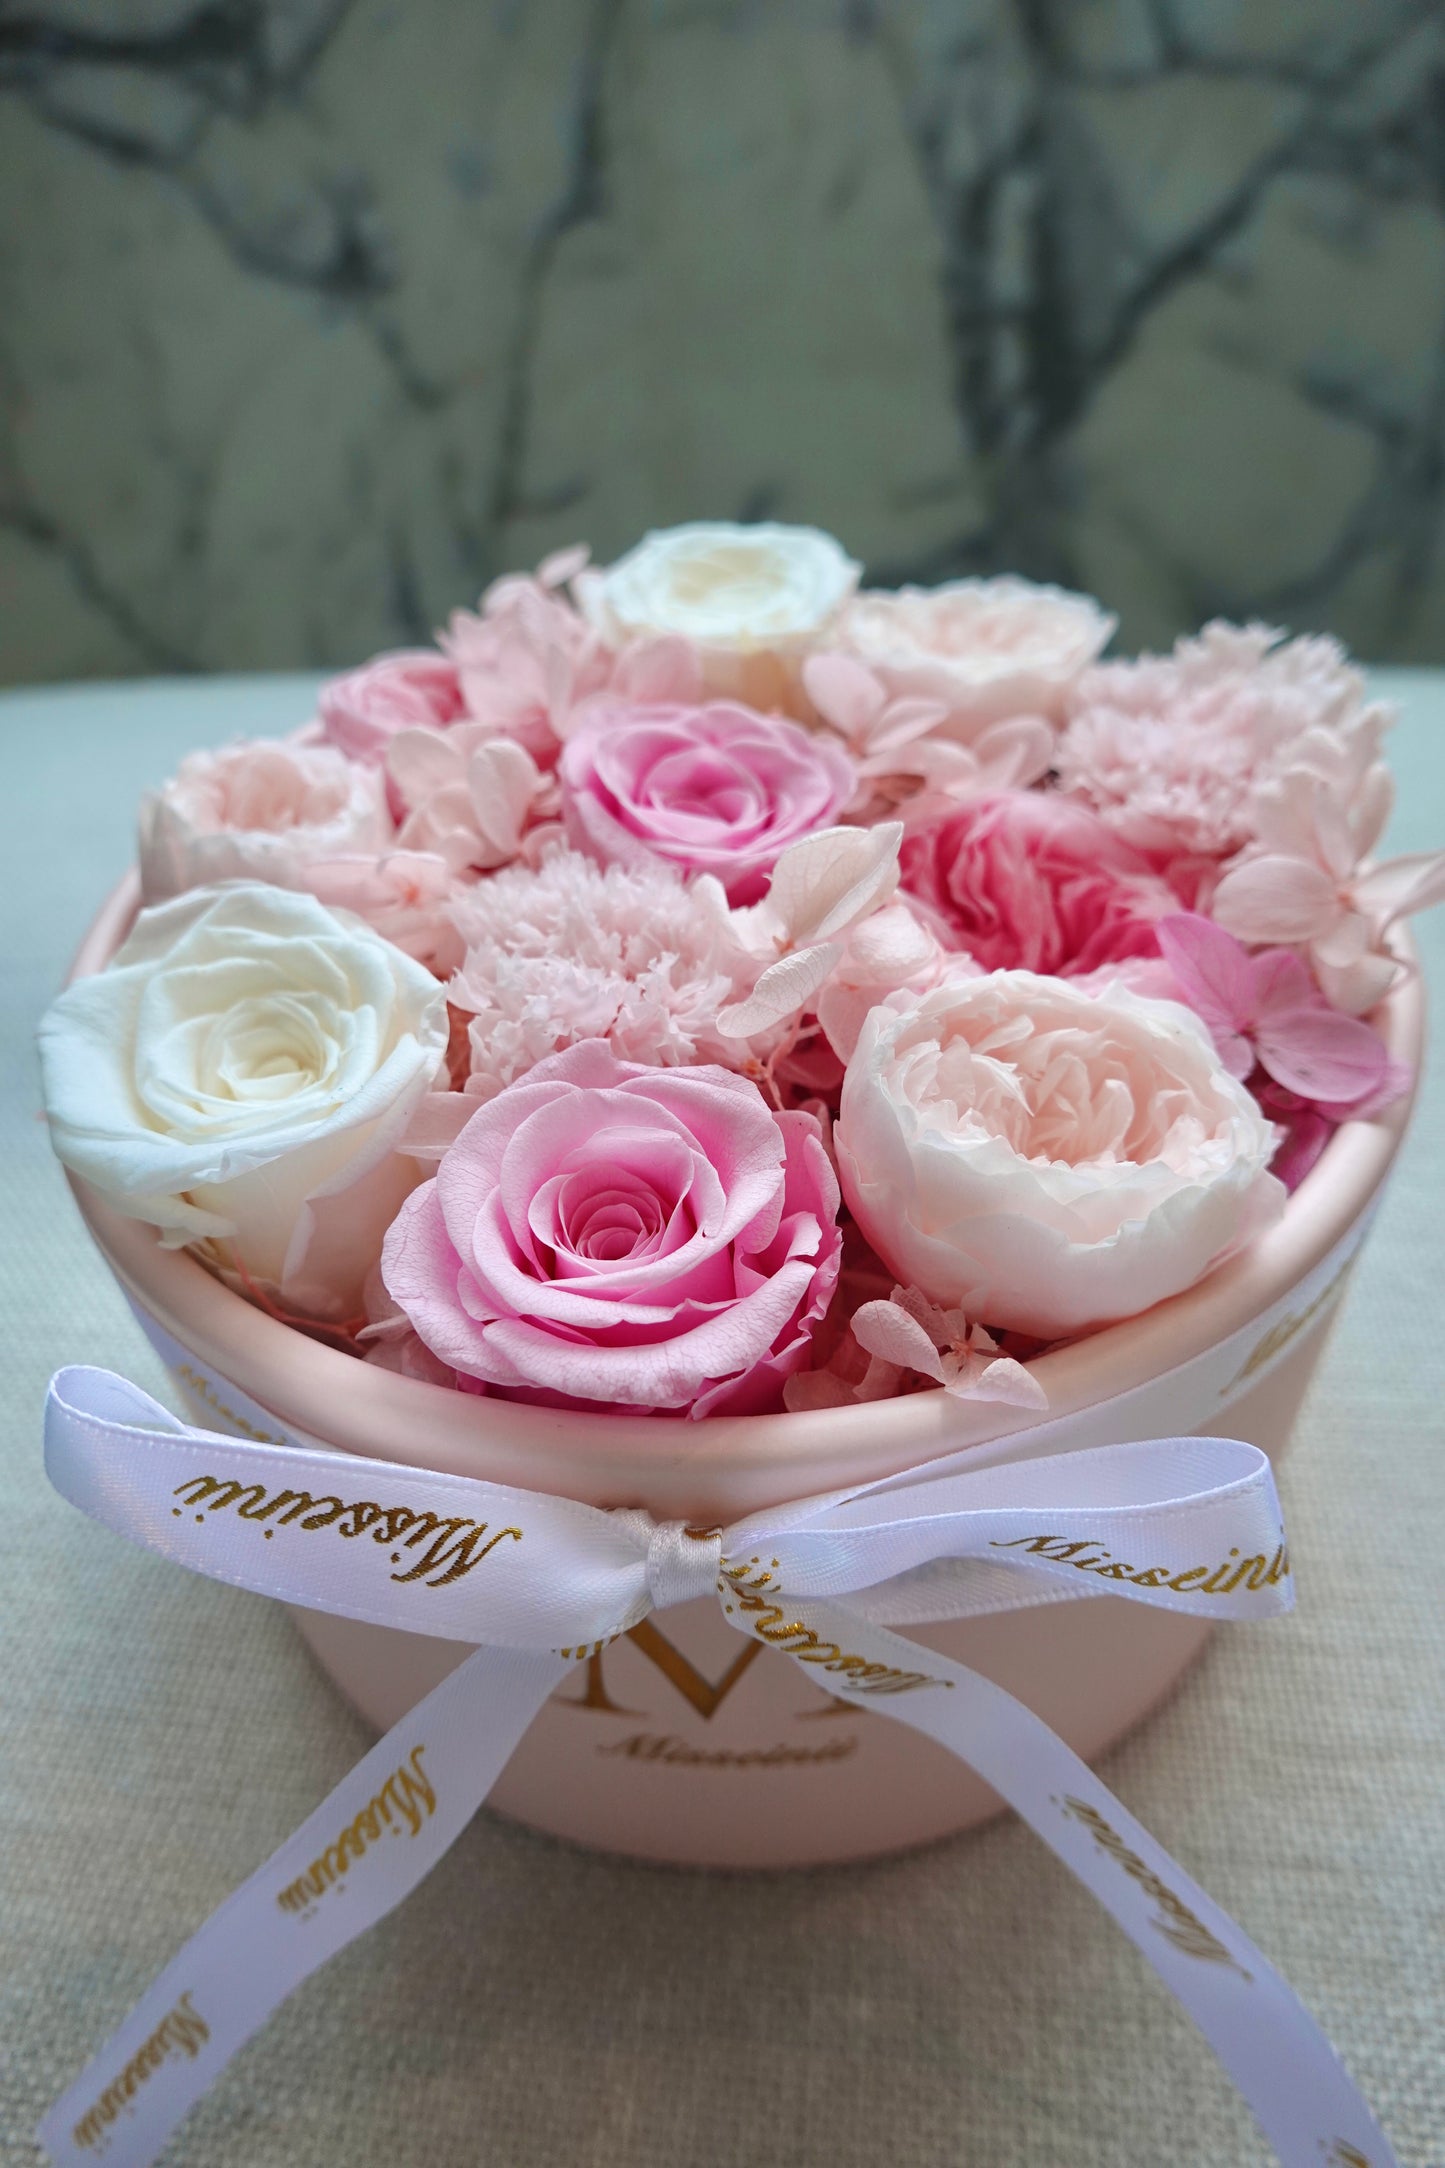 永生玫瑰氣球花盒 - 粉紅色